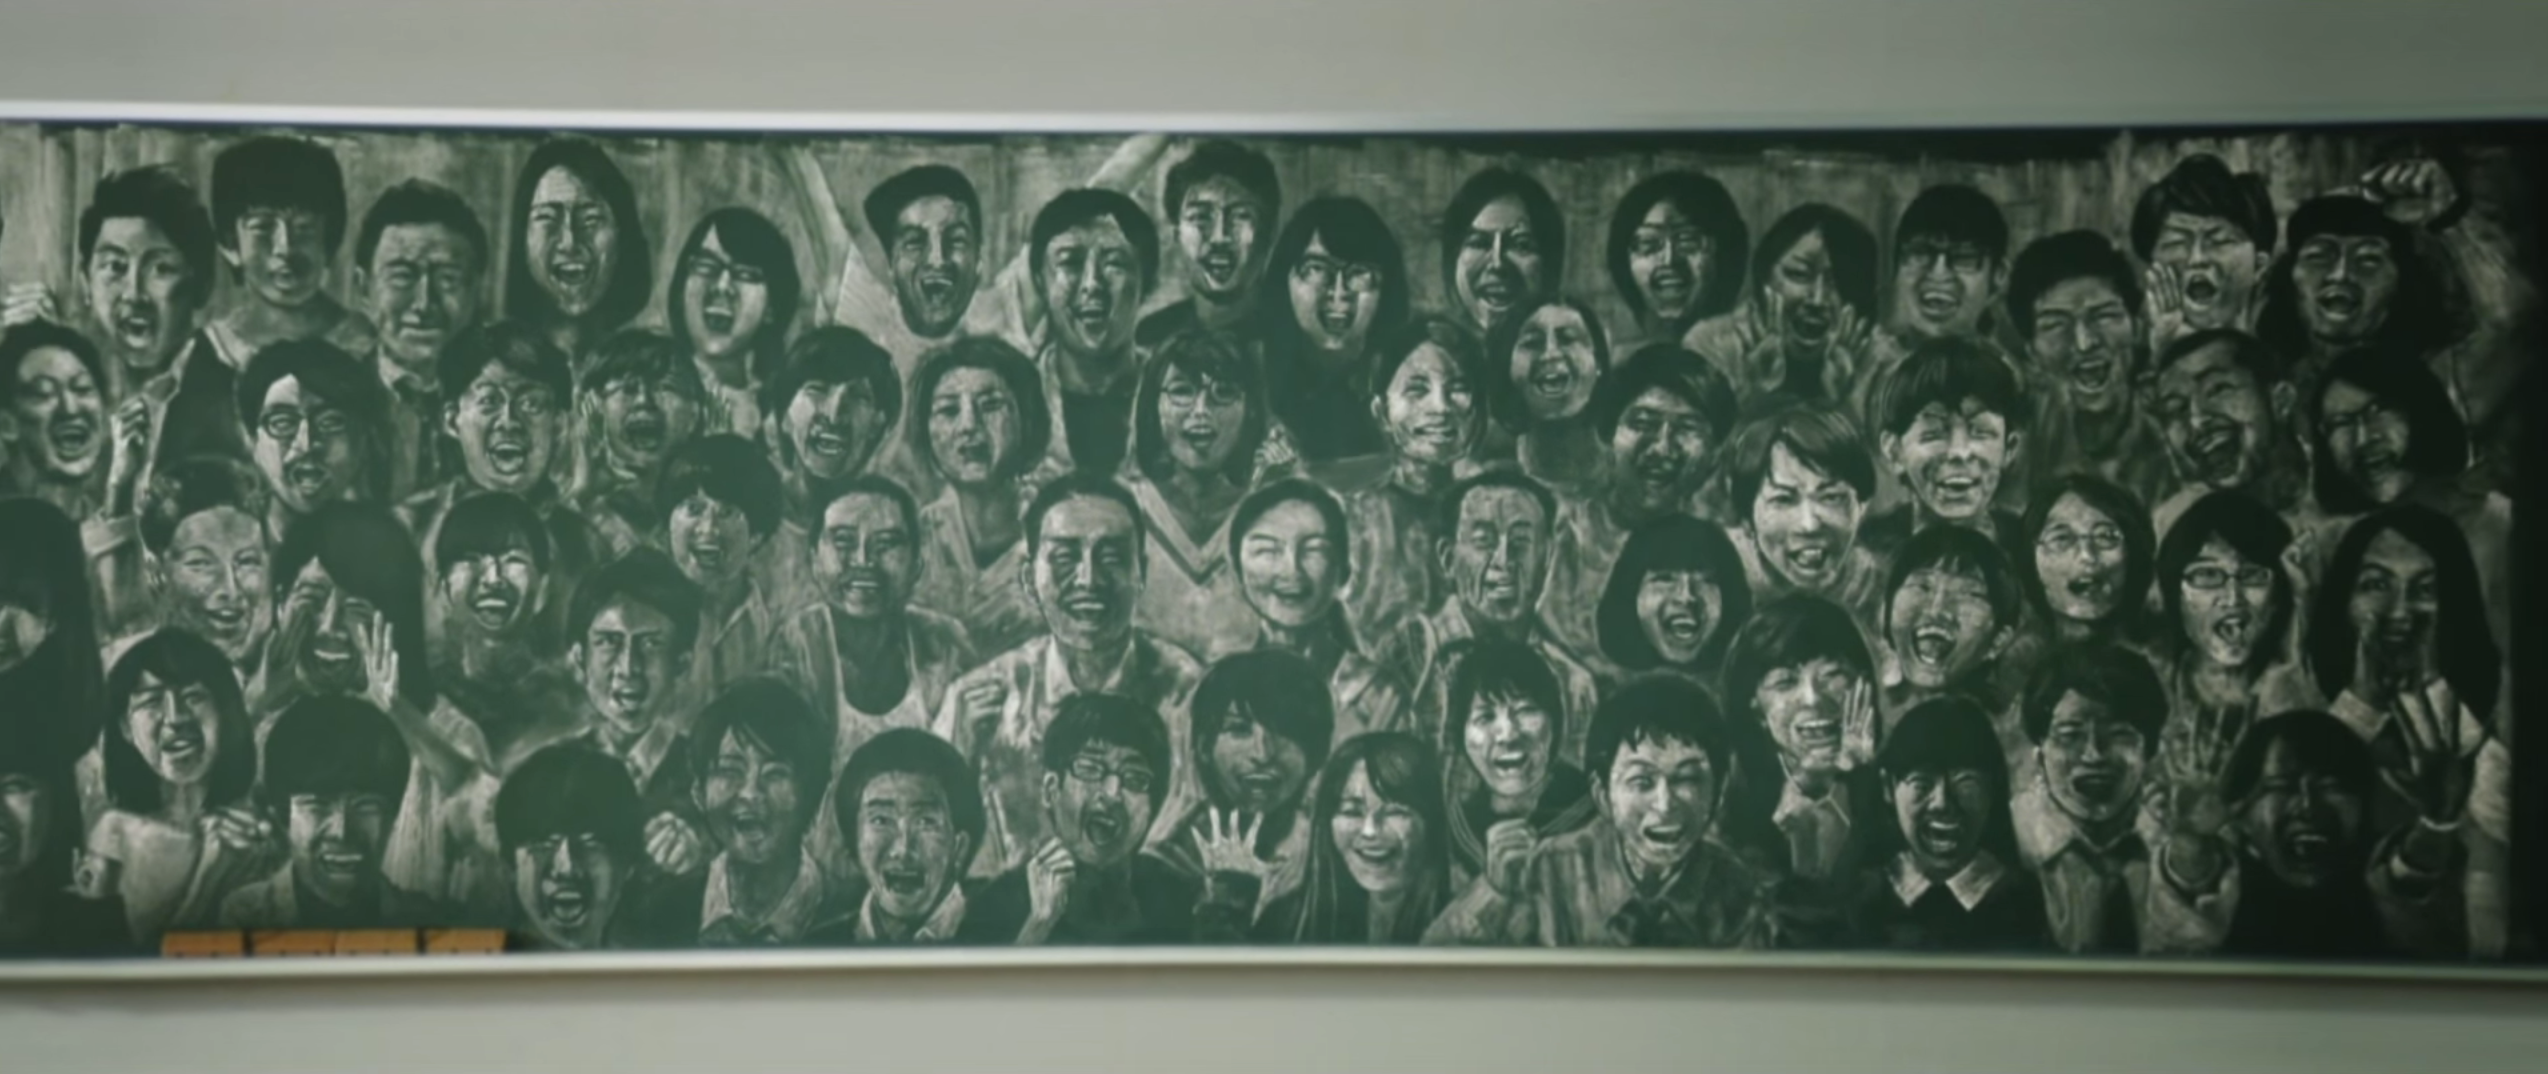 カロリーメイト新cm 2623時間かけて描きあげた黒板アートに 34人の美大生の底力を見た By Taichi Hirano Medium